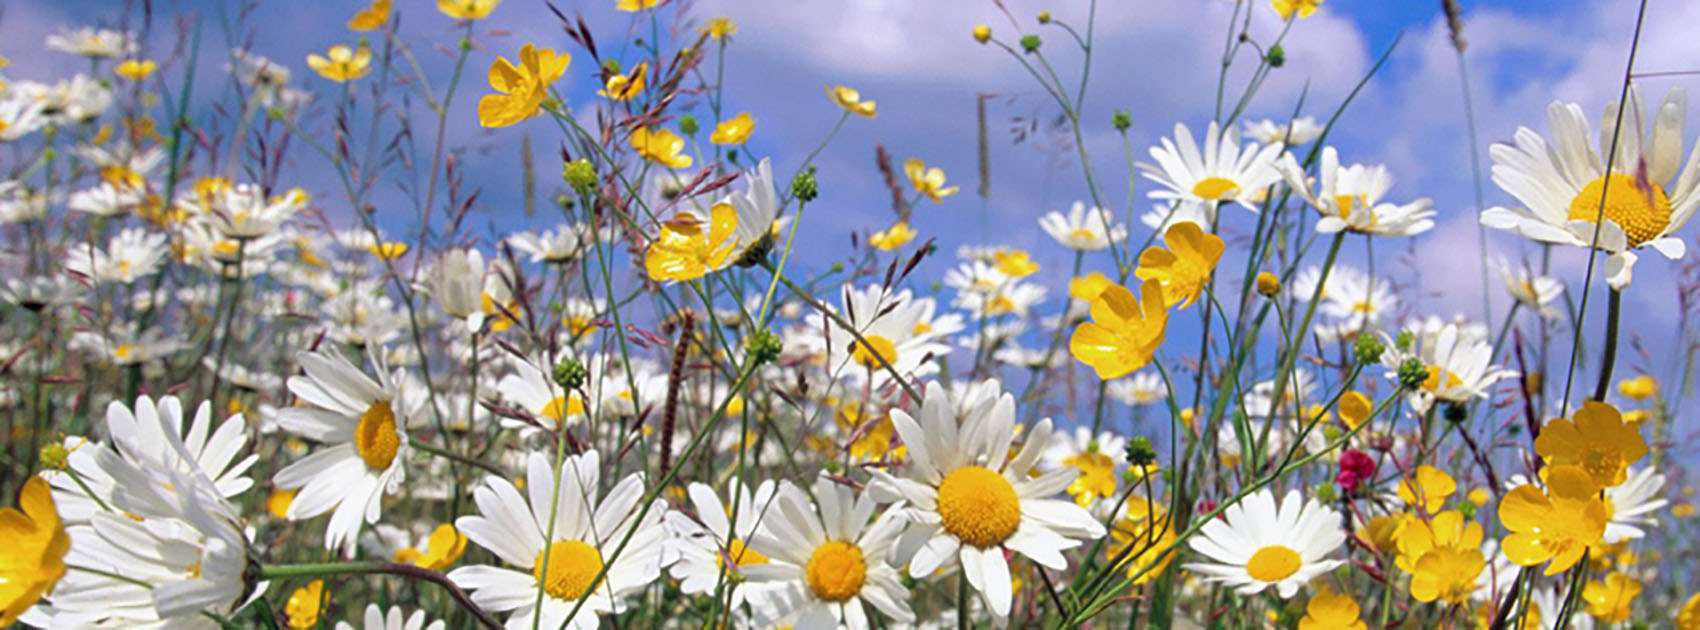 Ảnh bìa những bông hoa dại màu trắng màu vàng cực đẹp